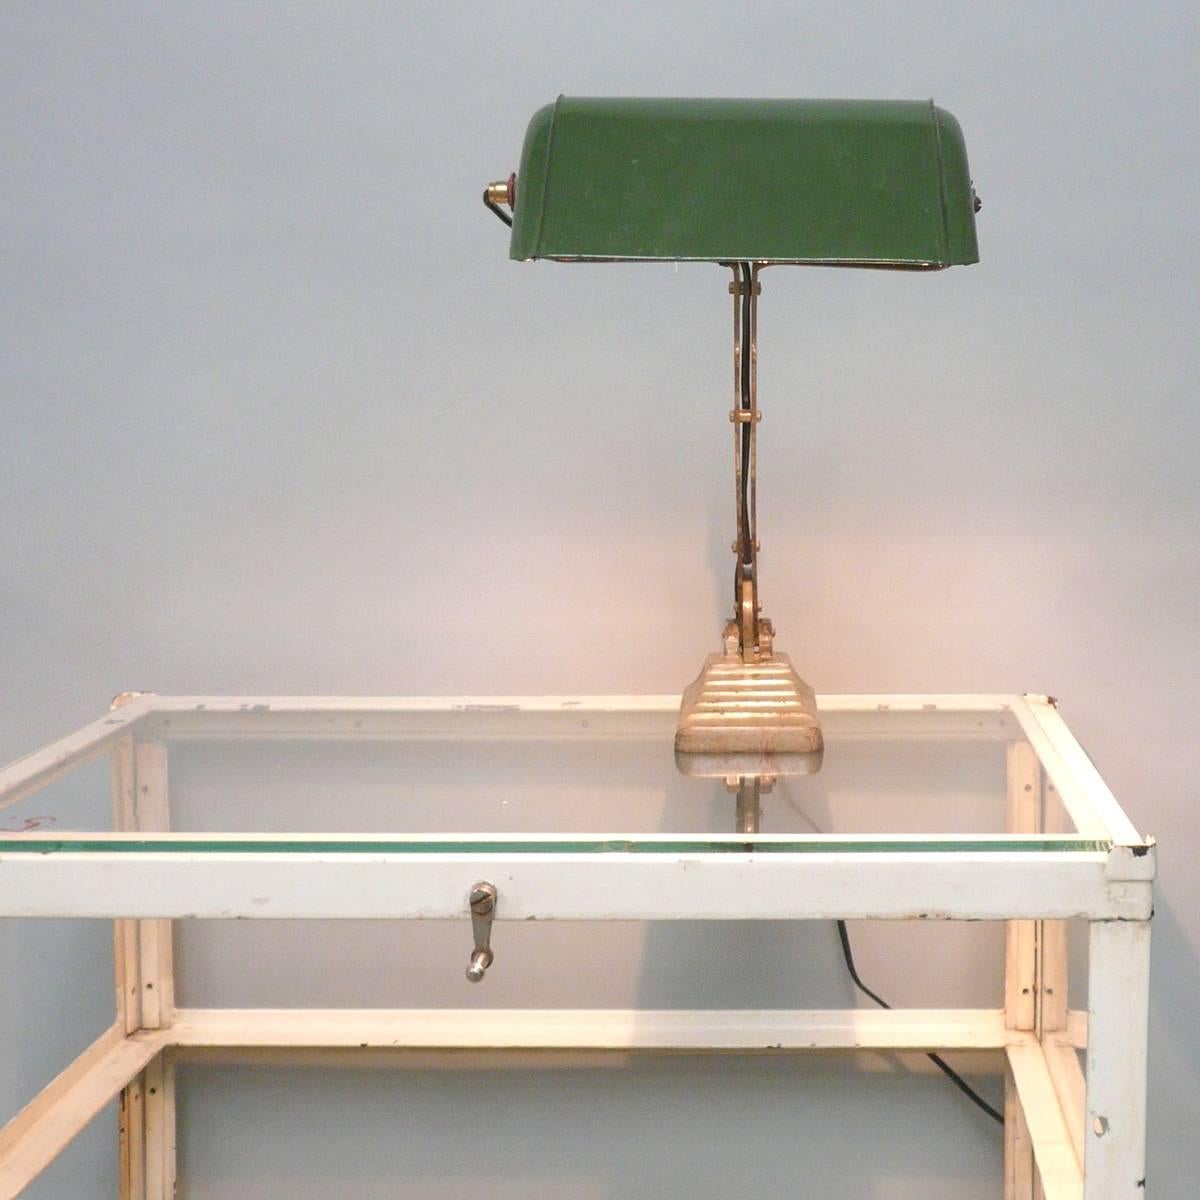 Lampe de bureau caractéristique, style Bauhaus, conçue en 1930. La lampe a une lourde base en fonte et un chapeau en métal émaillé. La base lourde donne à la lampe une place solide. Entièrement réglable et d'un look fantastique qui s'adapte à de